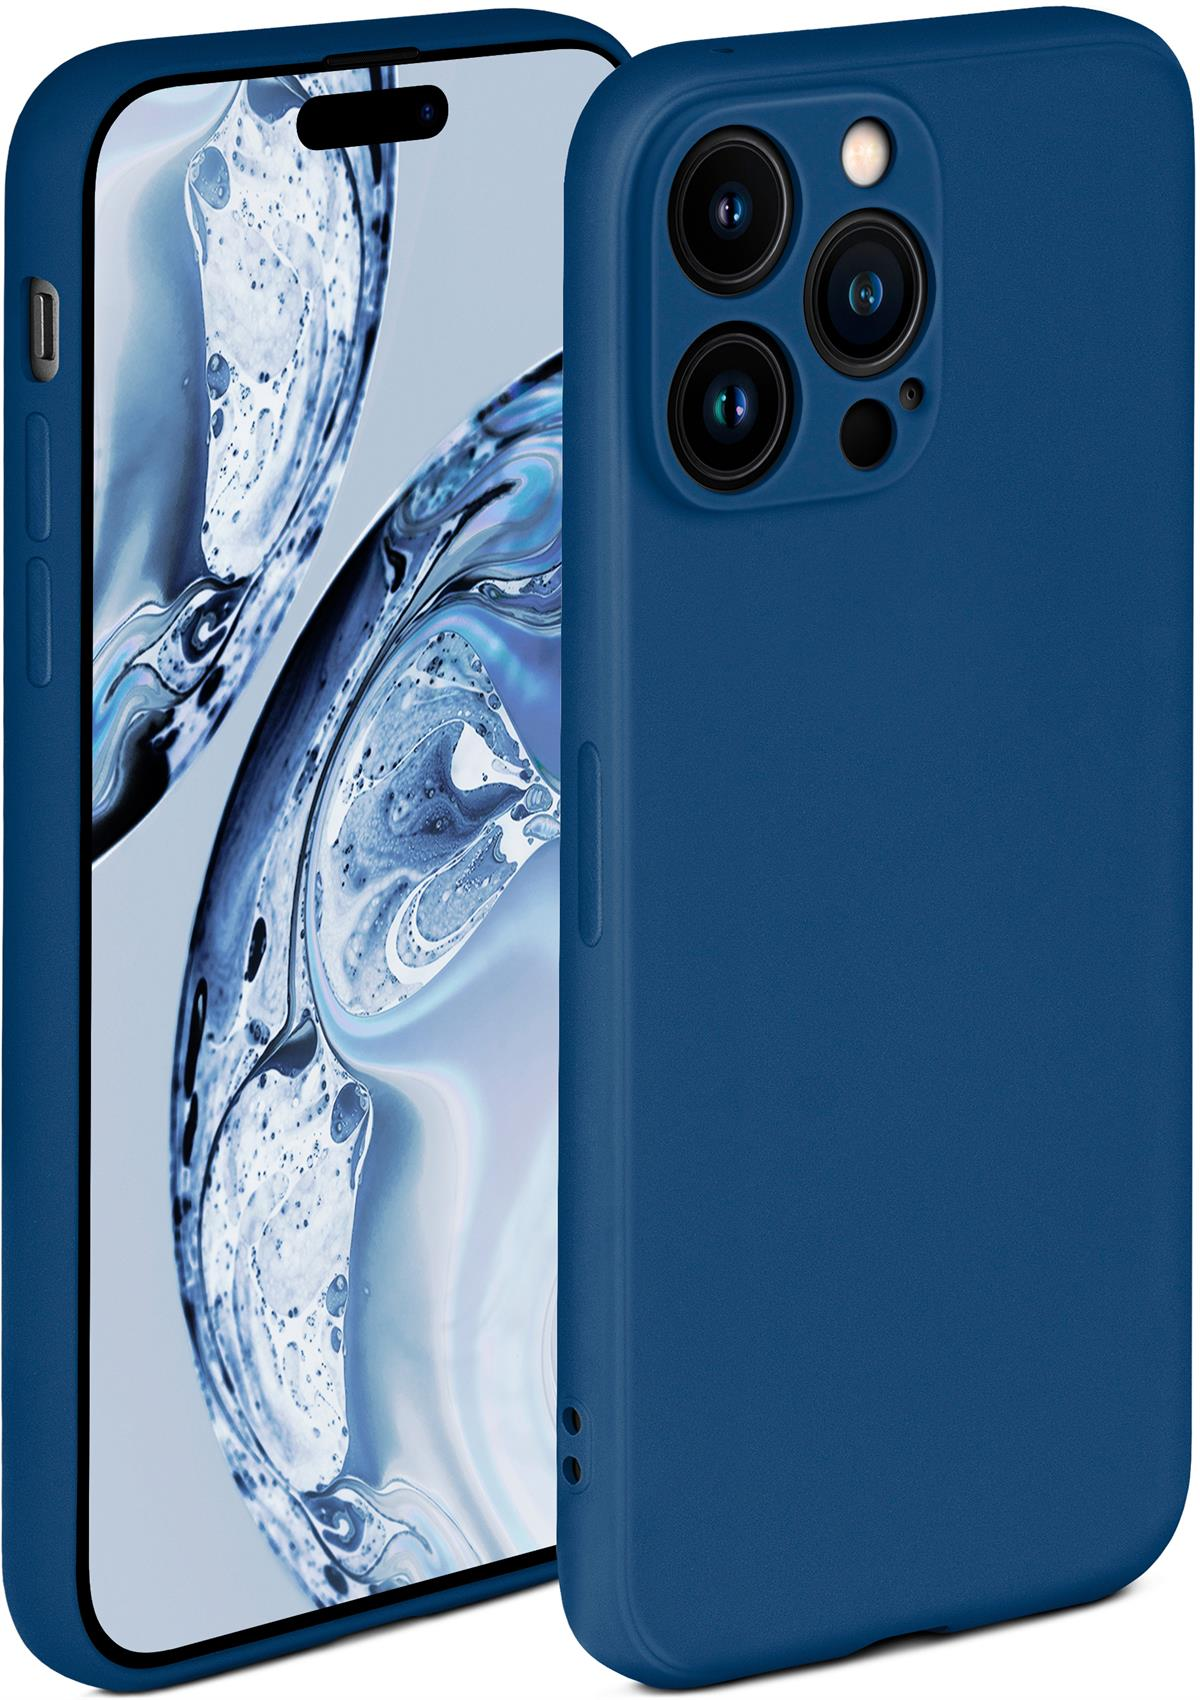 ONEFLOW Soft Case, Backcover, Apple, Pro, iPhone 14 Horizontblau